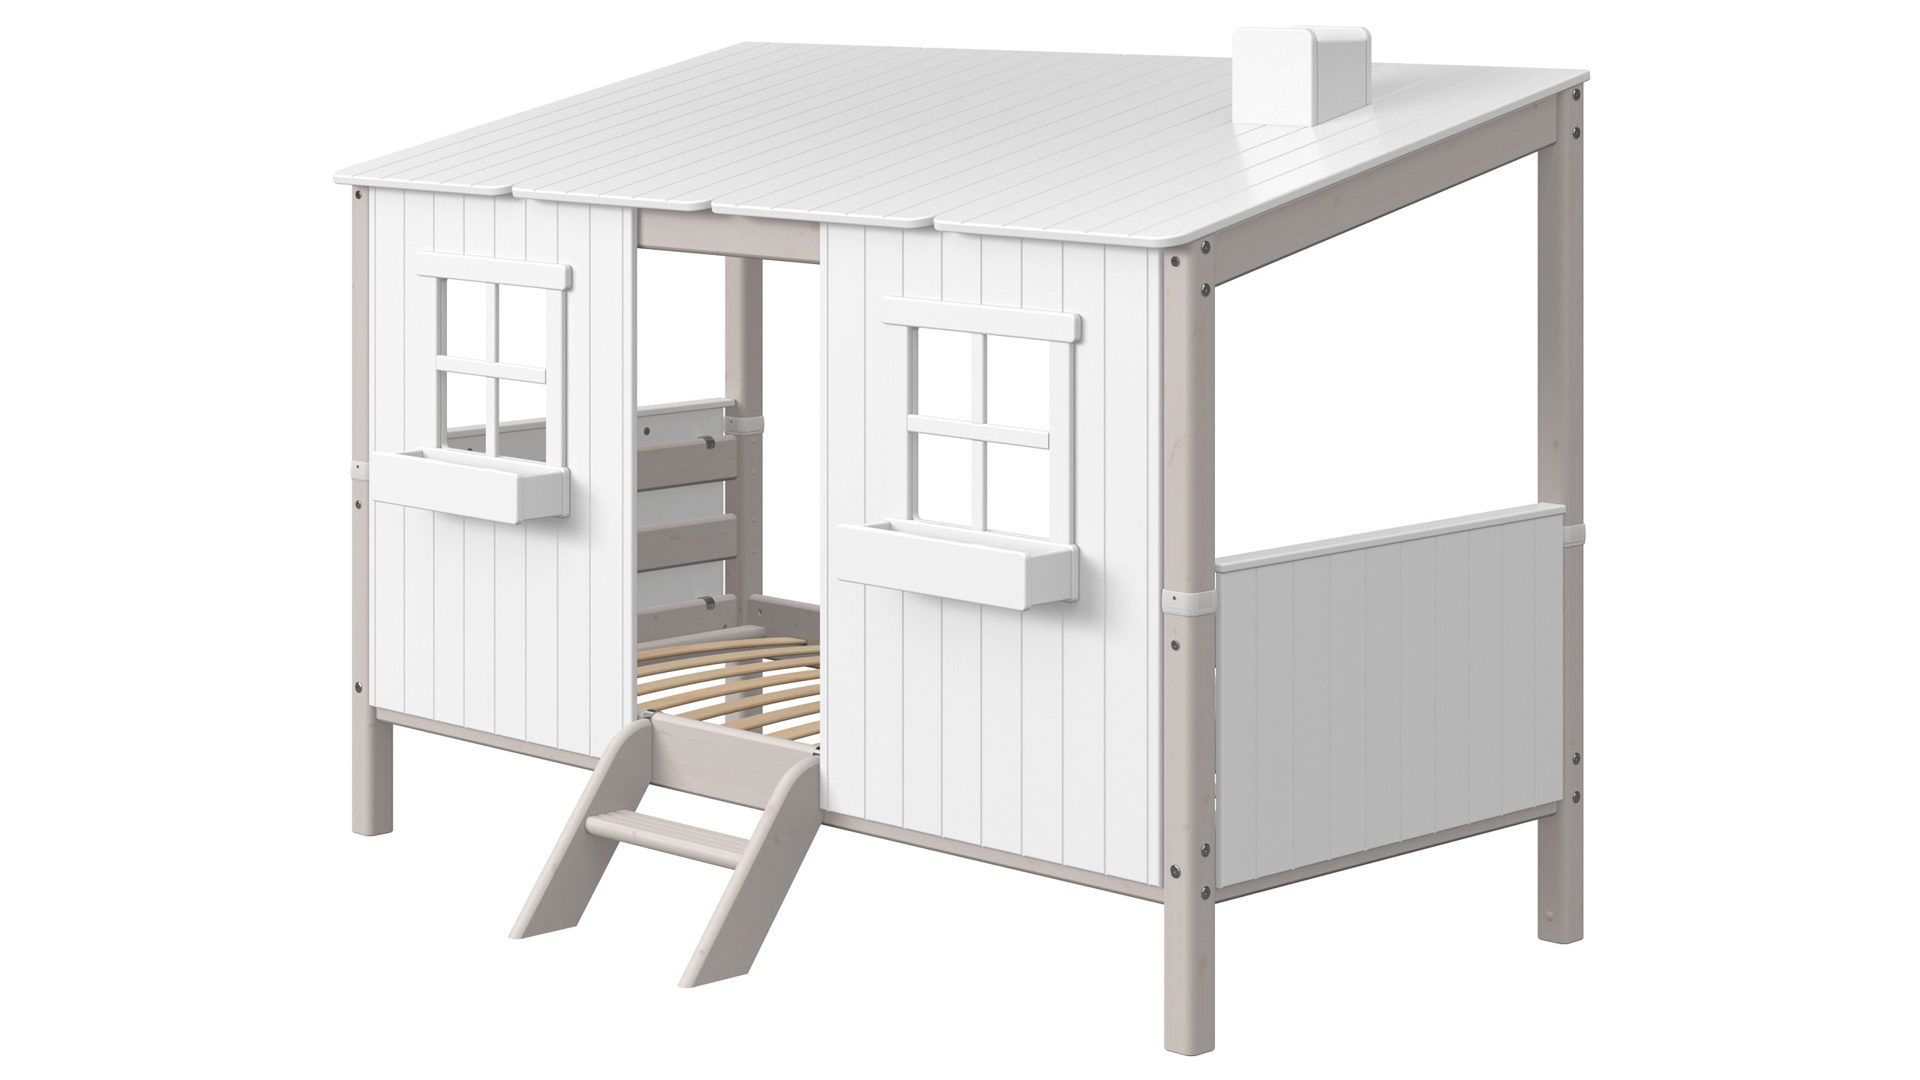 Einzelbett Flexa aus Holz in Hellgrau Weiß FLEXA Classic Bett Spielbett mit ganzem Haus 90x200 cm Kiefer grau lasiert, deckend weiss